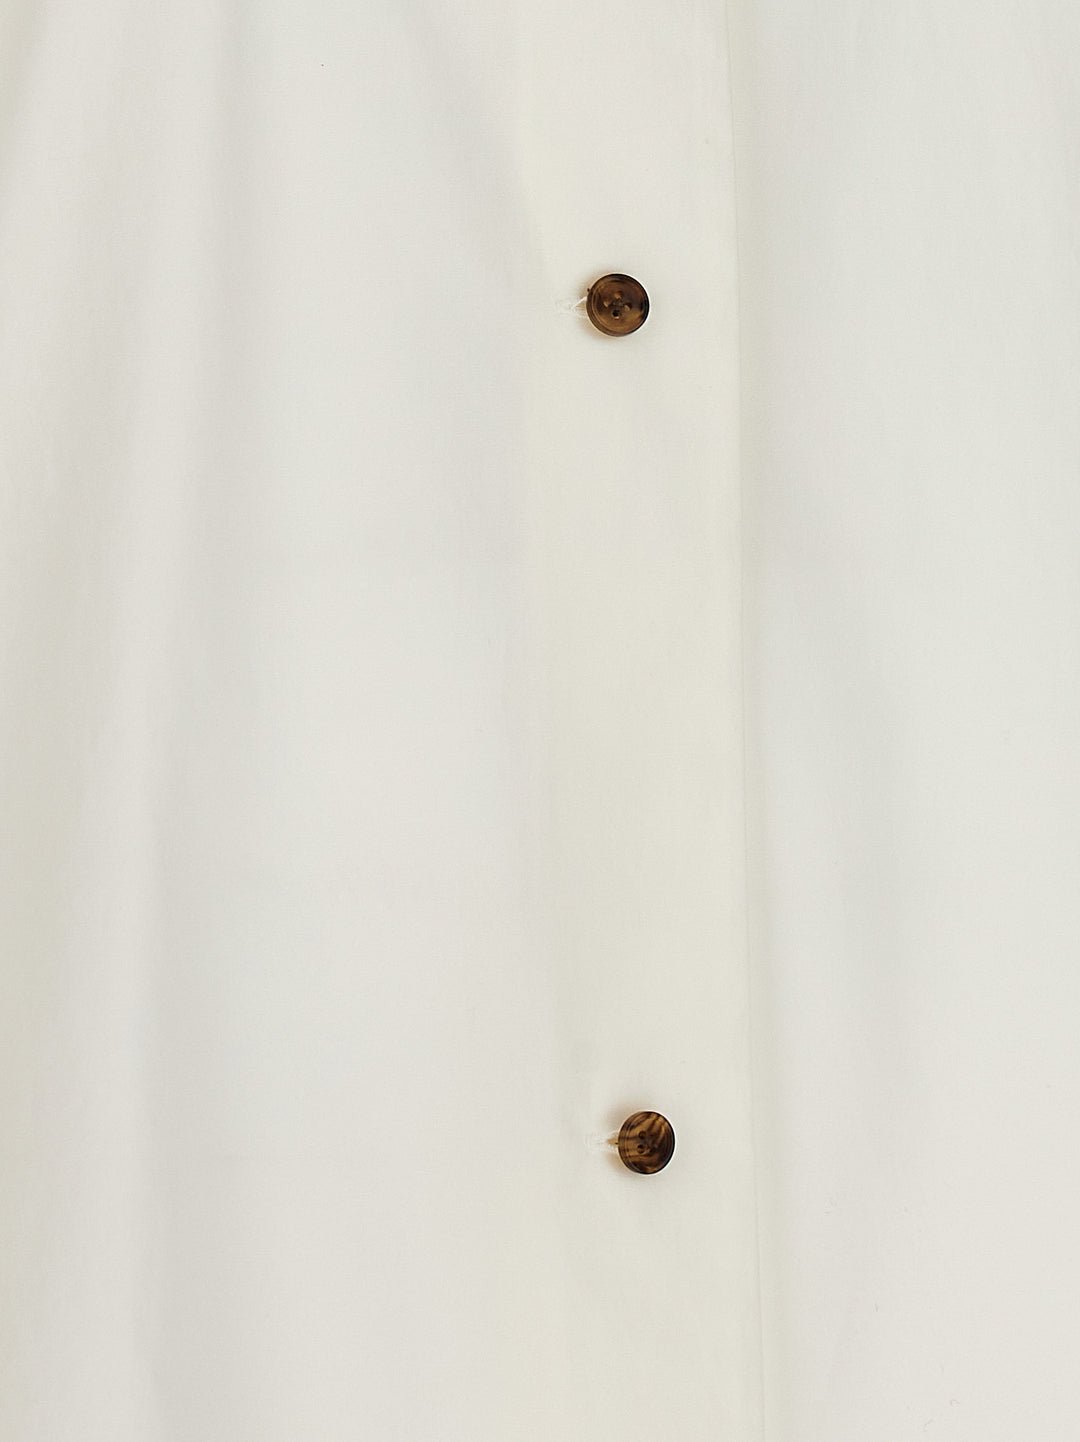 Rigel Camicie Bianco